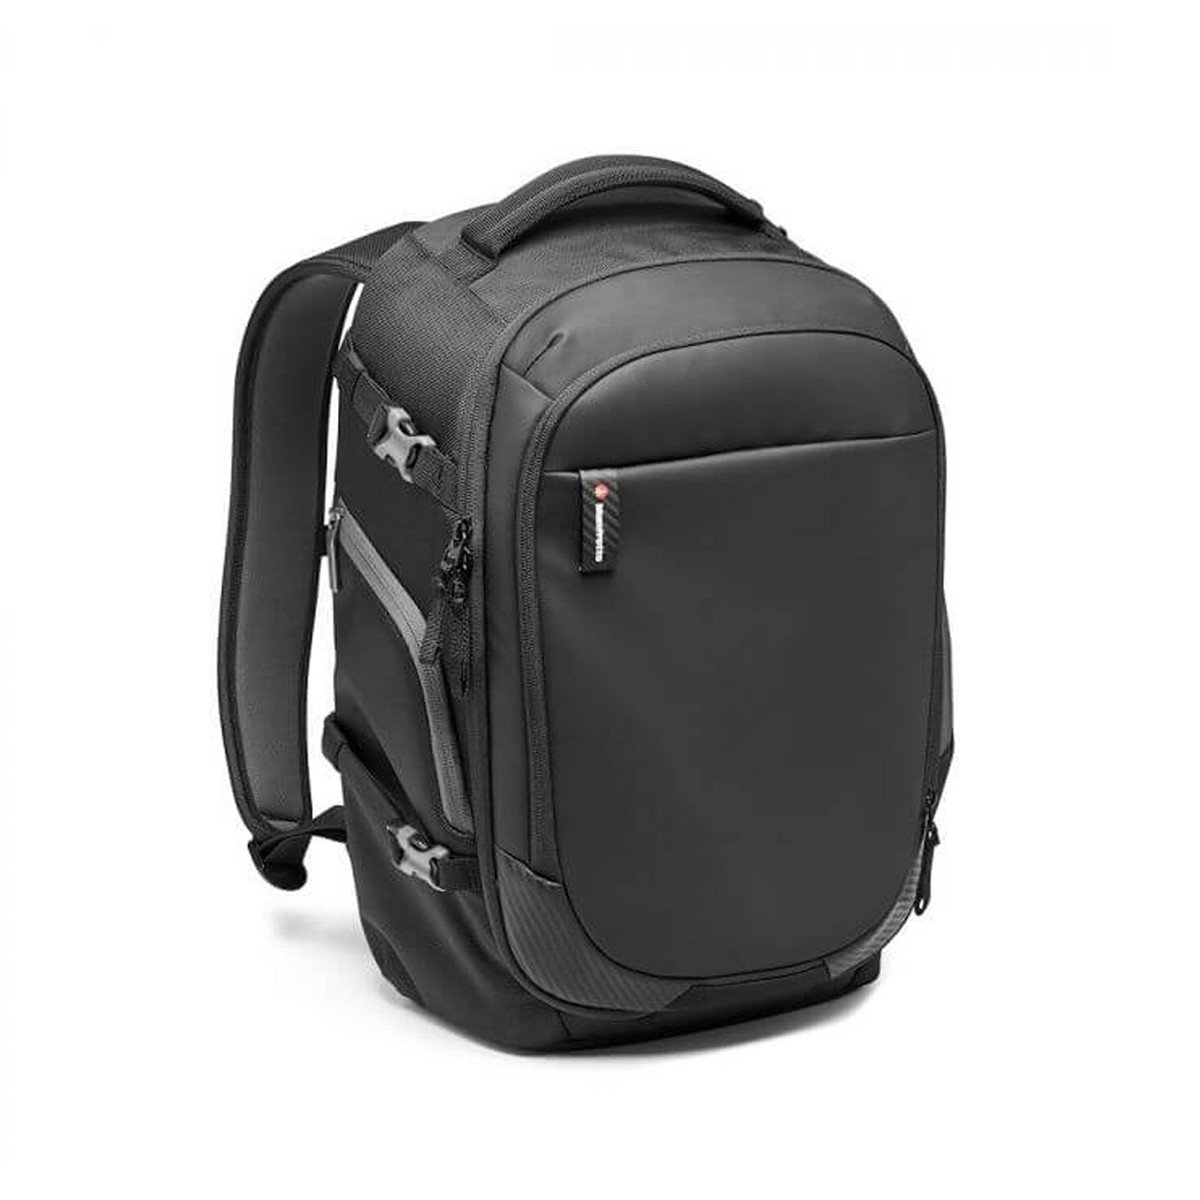 Advanced2 Camera Gear Backpack Black